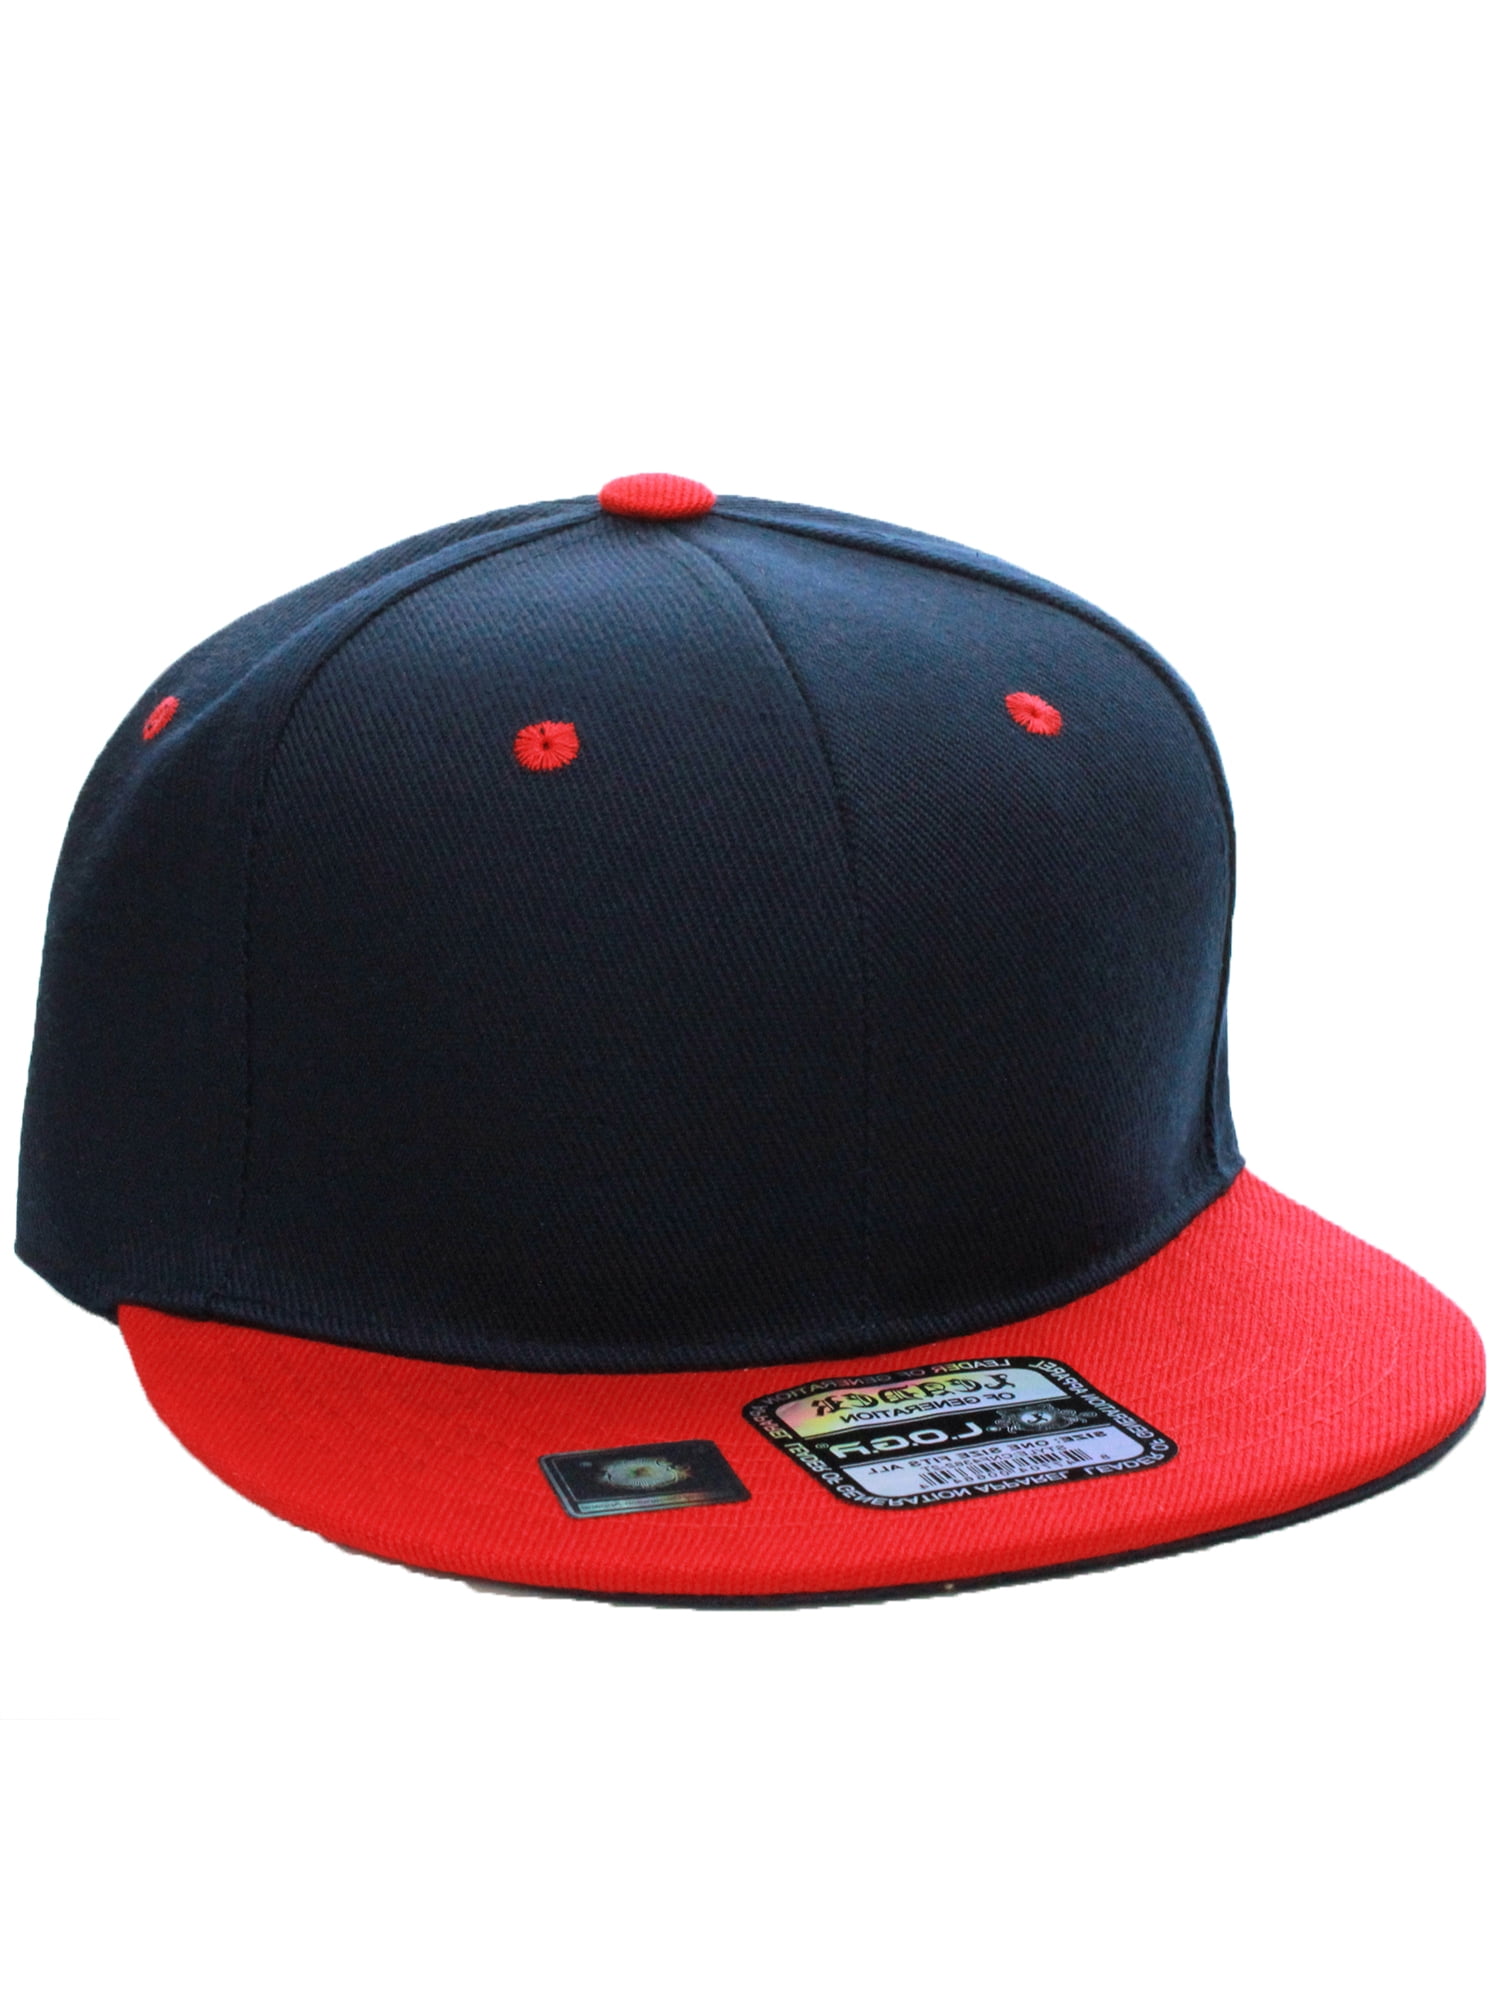 D&I. Plain Adjustable Snapback Hats Caps Flat Bill Visor - Blue Red 